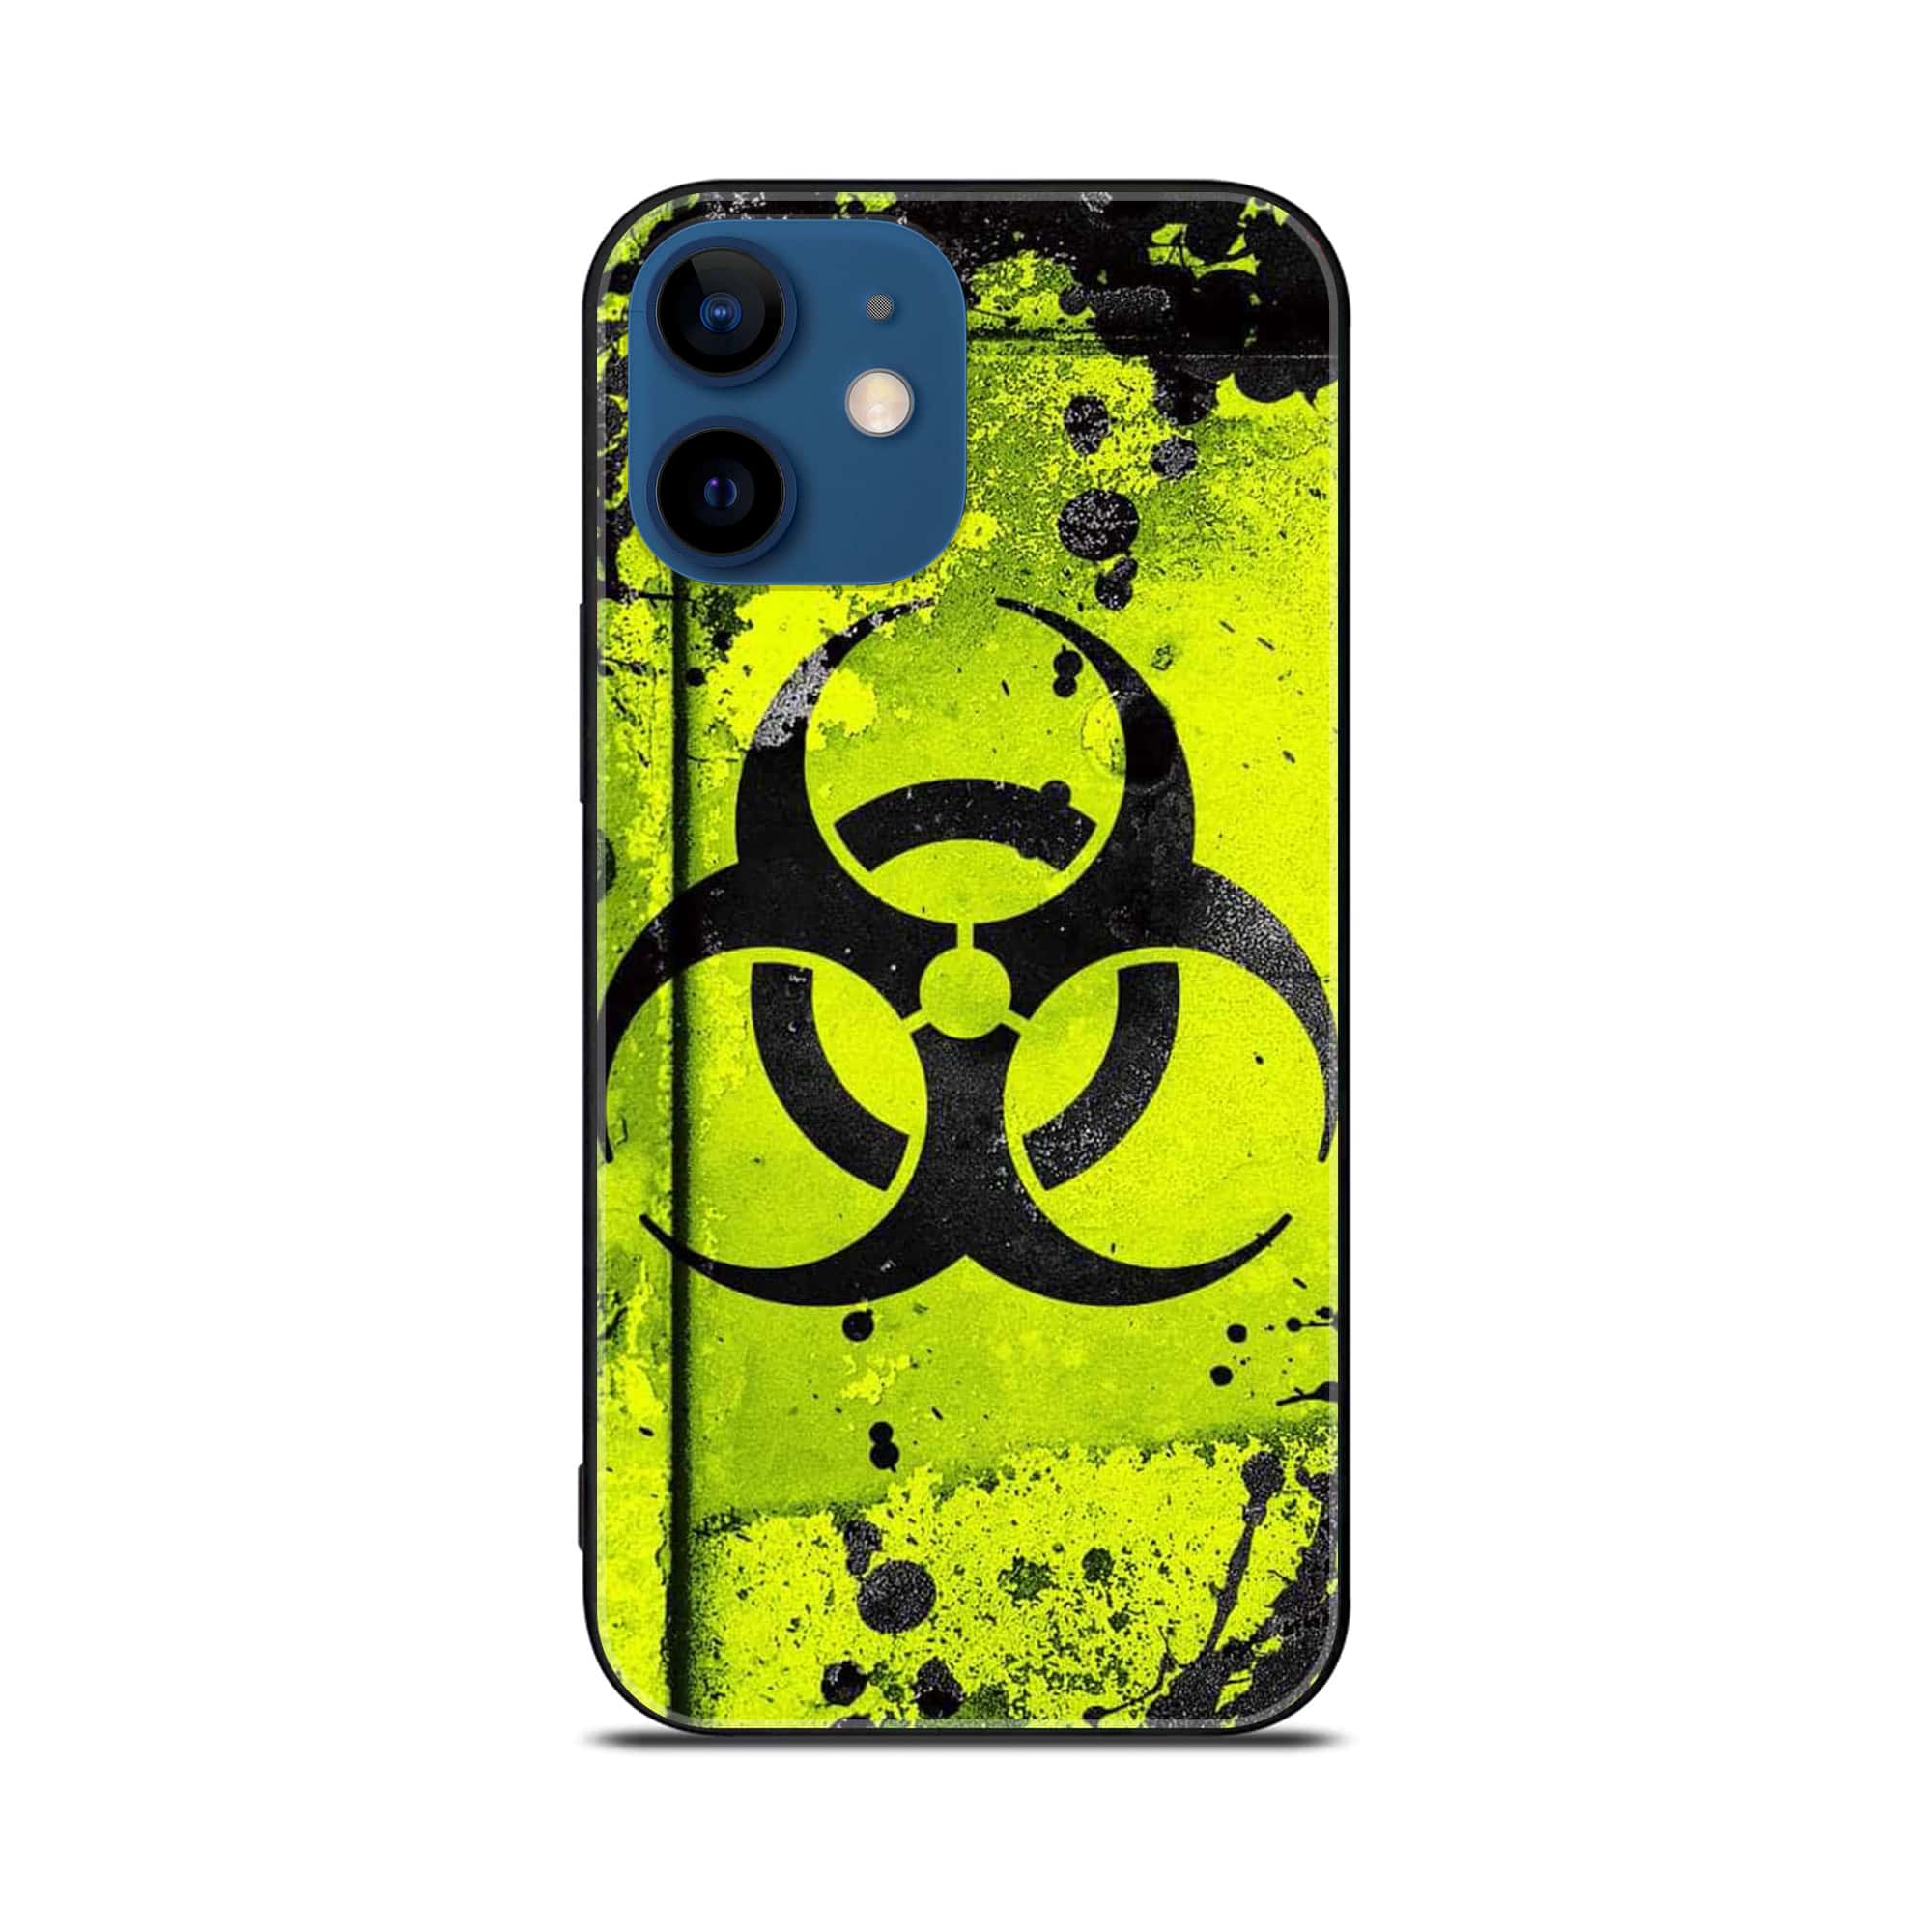 iPhone 12 Mini Biohazard Sign  Premium Printed Glass soft Bumper shock Proof Case